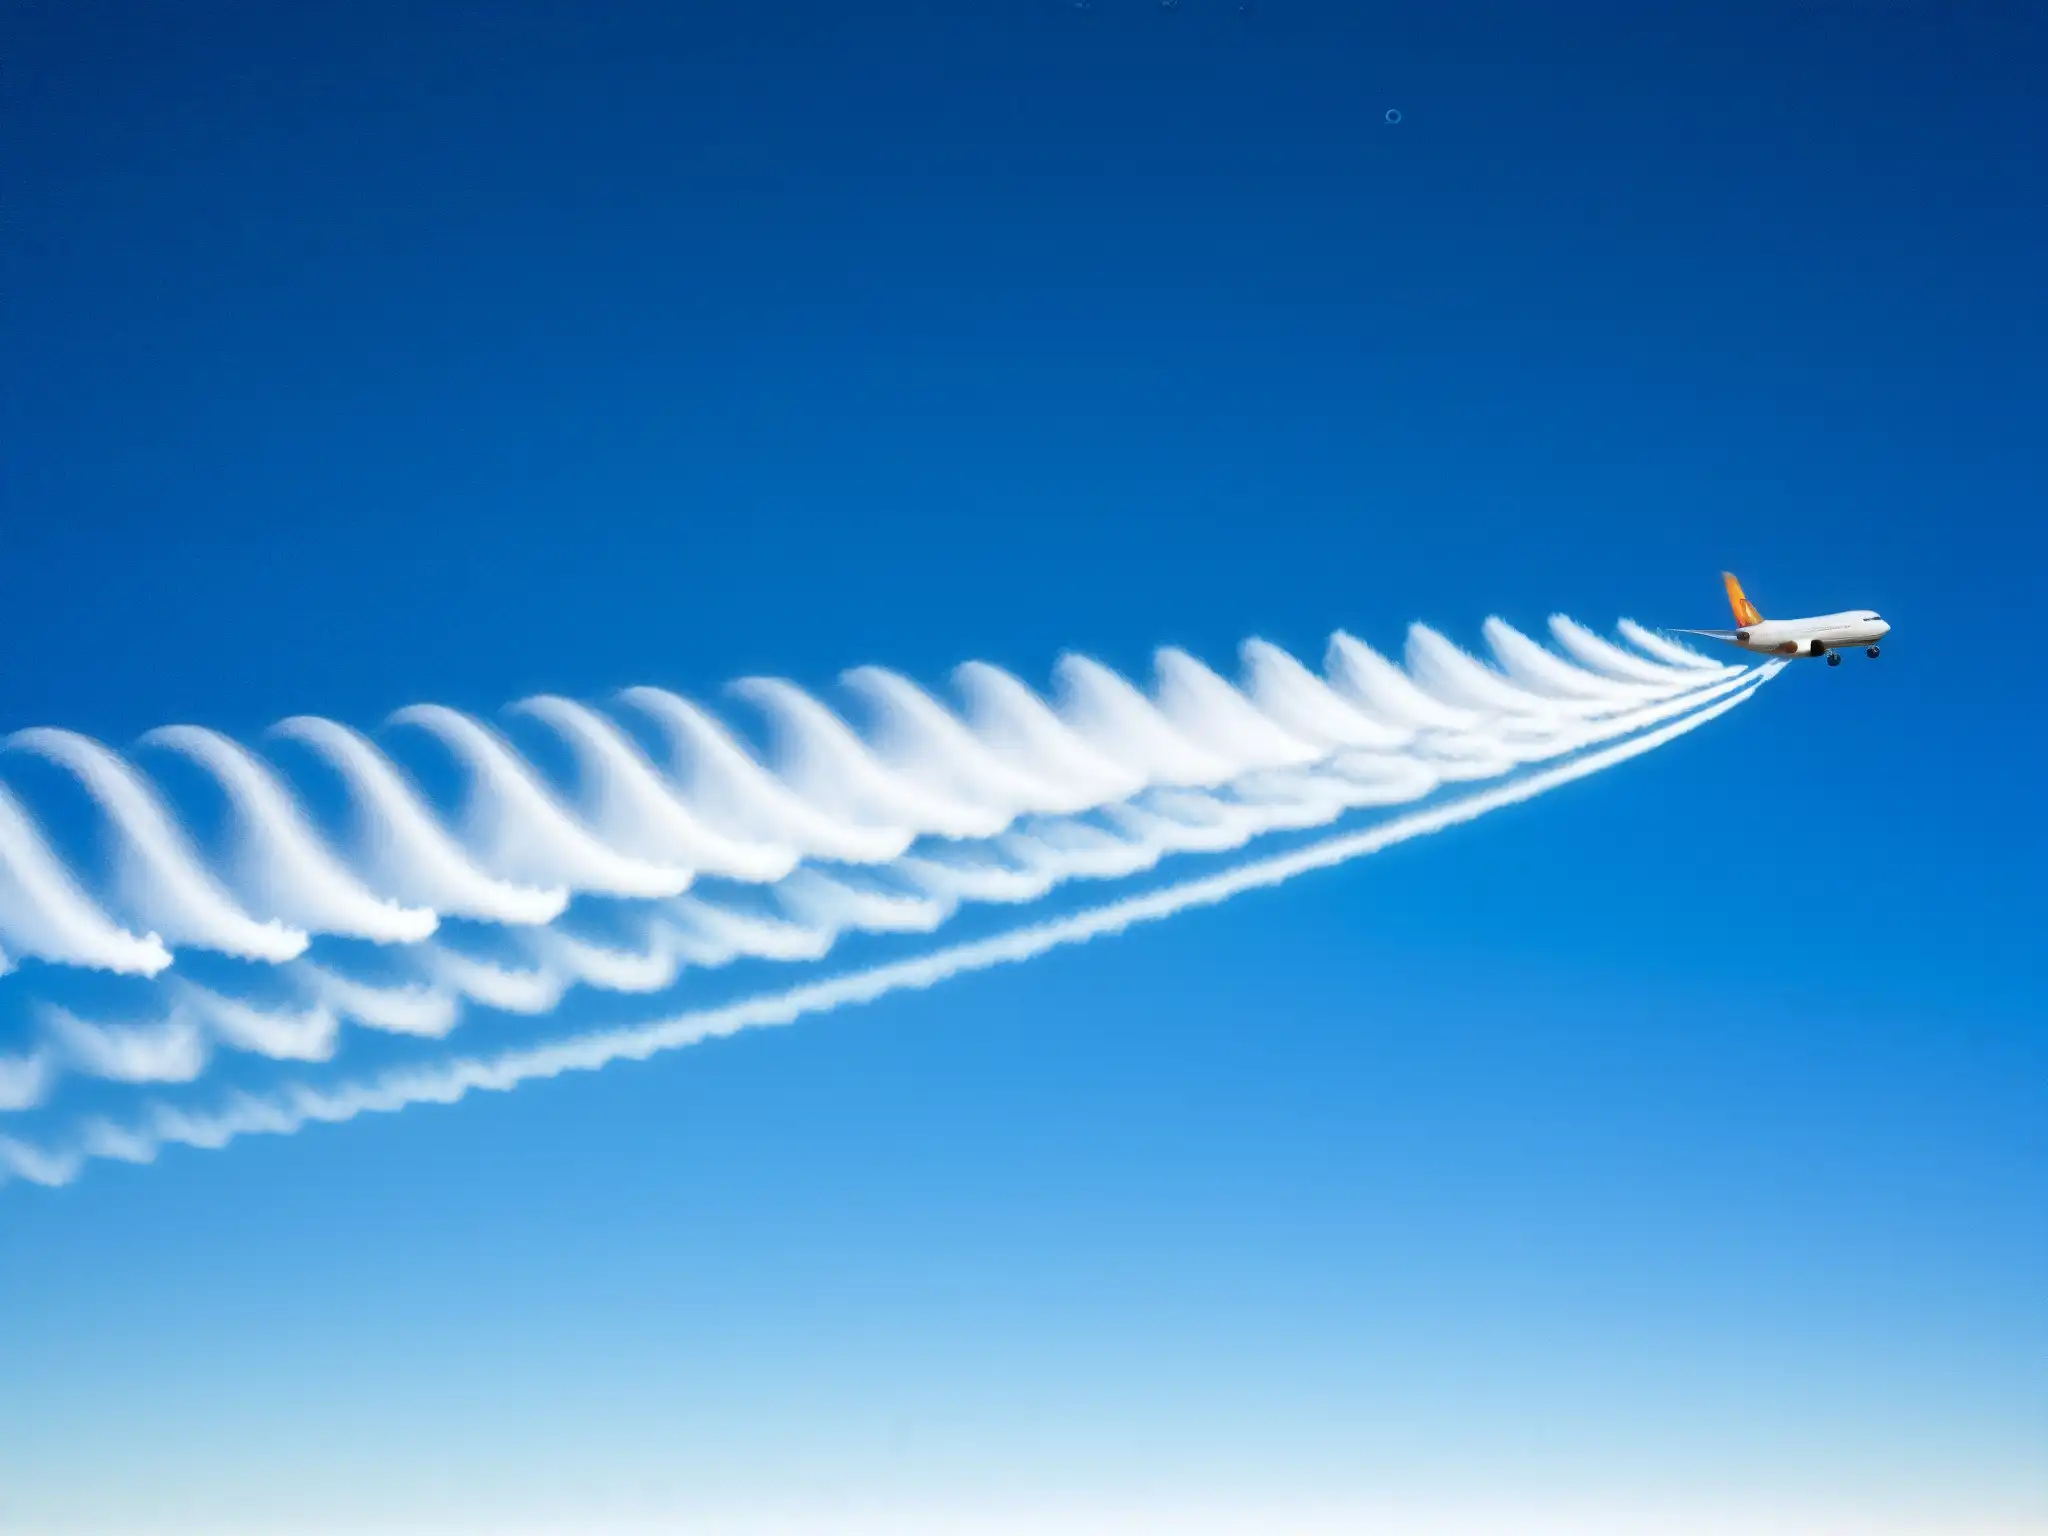 Detalle de estela de avión en el cielo azul, mostrando la dispersión de partículas